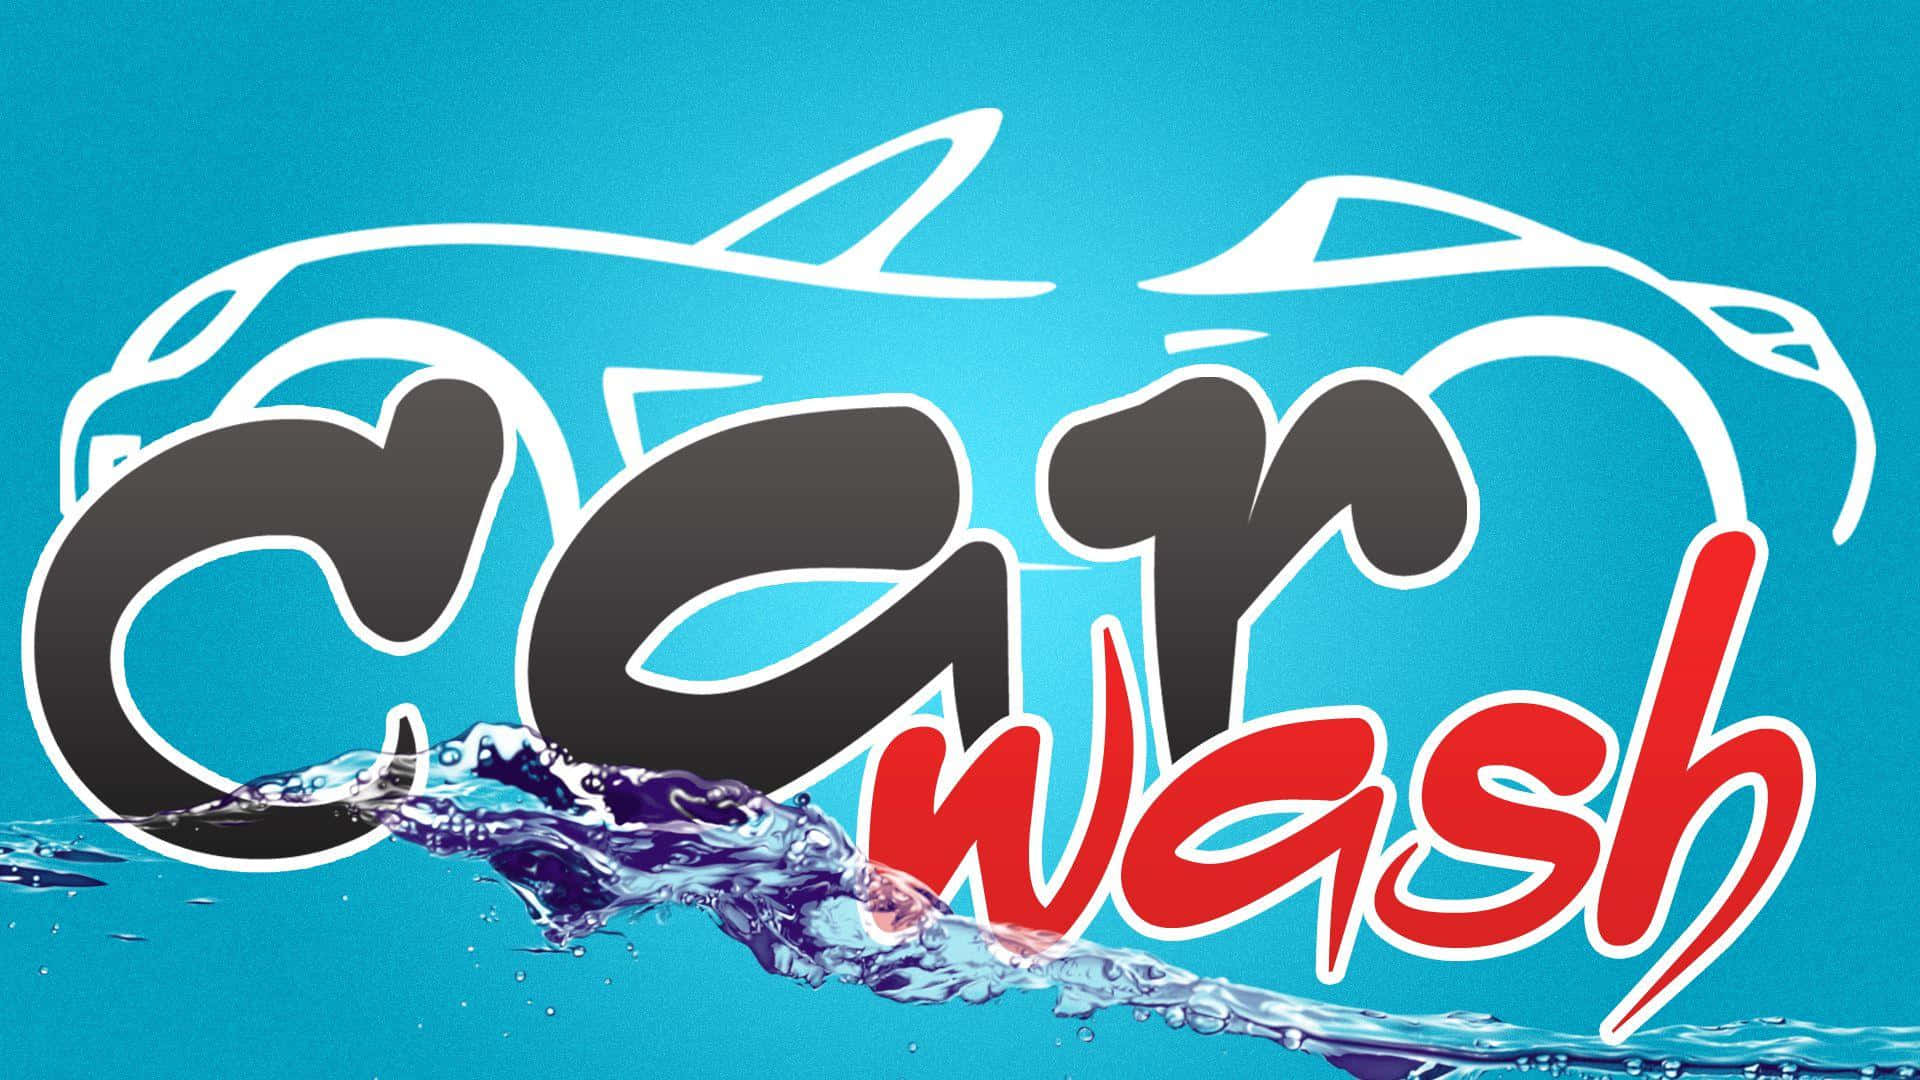 Car Wash Logo With Water Splashing